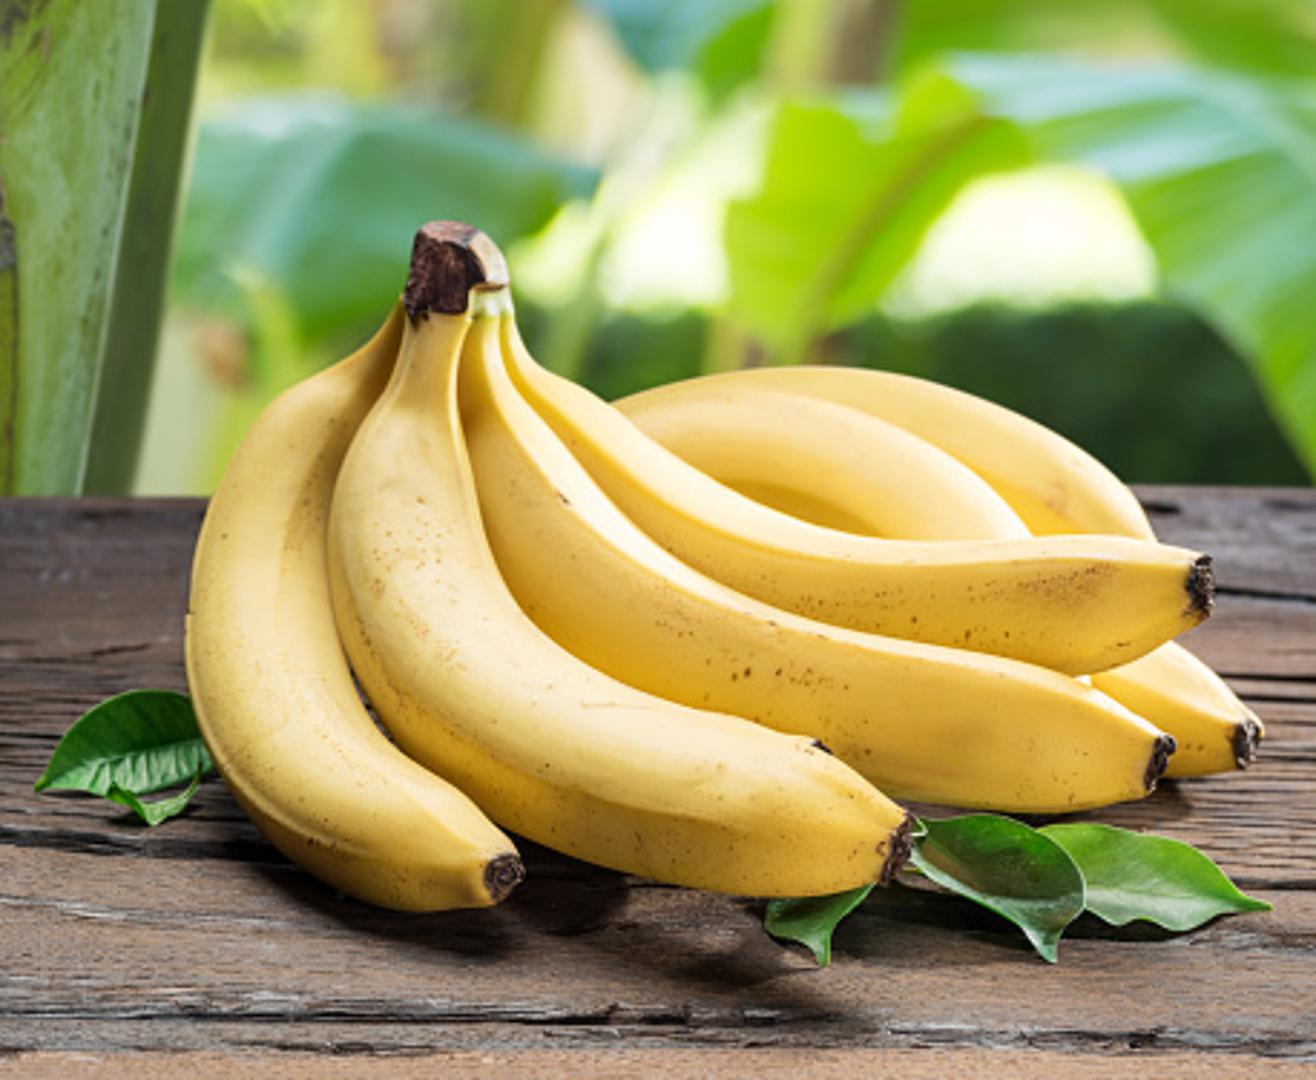 Banane: Utječu na lijekove za visoki krvni tlak i srce. "ACE inhibitori i ARB-i imaju tendenciju da pogoduju zadržavanju kalija u bubrezima. Dok se većina ljudi na to prilagođava bez problema, nekima se razina kalija povećava - osobito starijim osobama ili osobama s bubrežnom bolešću. Za ovu skupinu, jedenje velikih količina hrane bogate kalijem, poput banana može prekomjerno povisiti te razine, što dovodi do slabosti, umora i abnormalnog srčanog ritma“, navode stručnjaci.